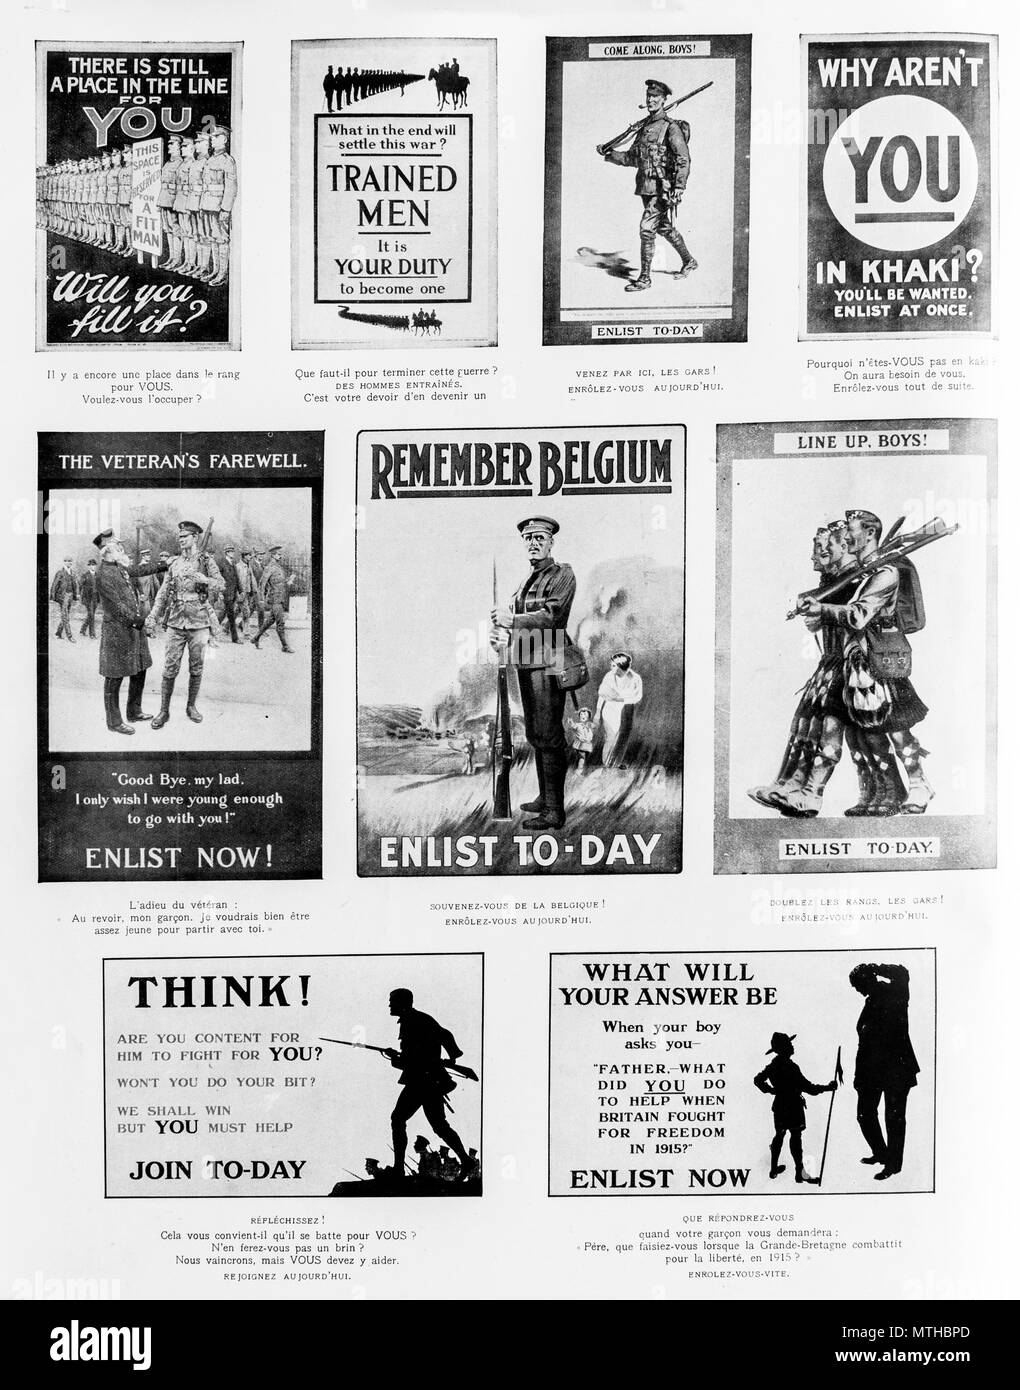 "Votre pays a besoin de vous", la publicité pour convaincre les gens de s'enrôler dans l'armée, 1915, Grande-Bretagne Banque D'Images